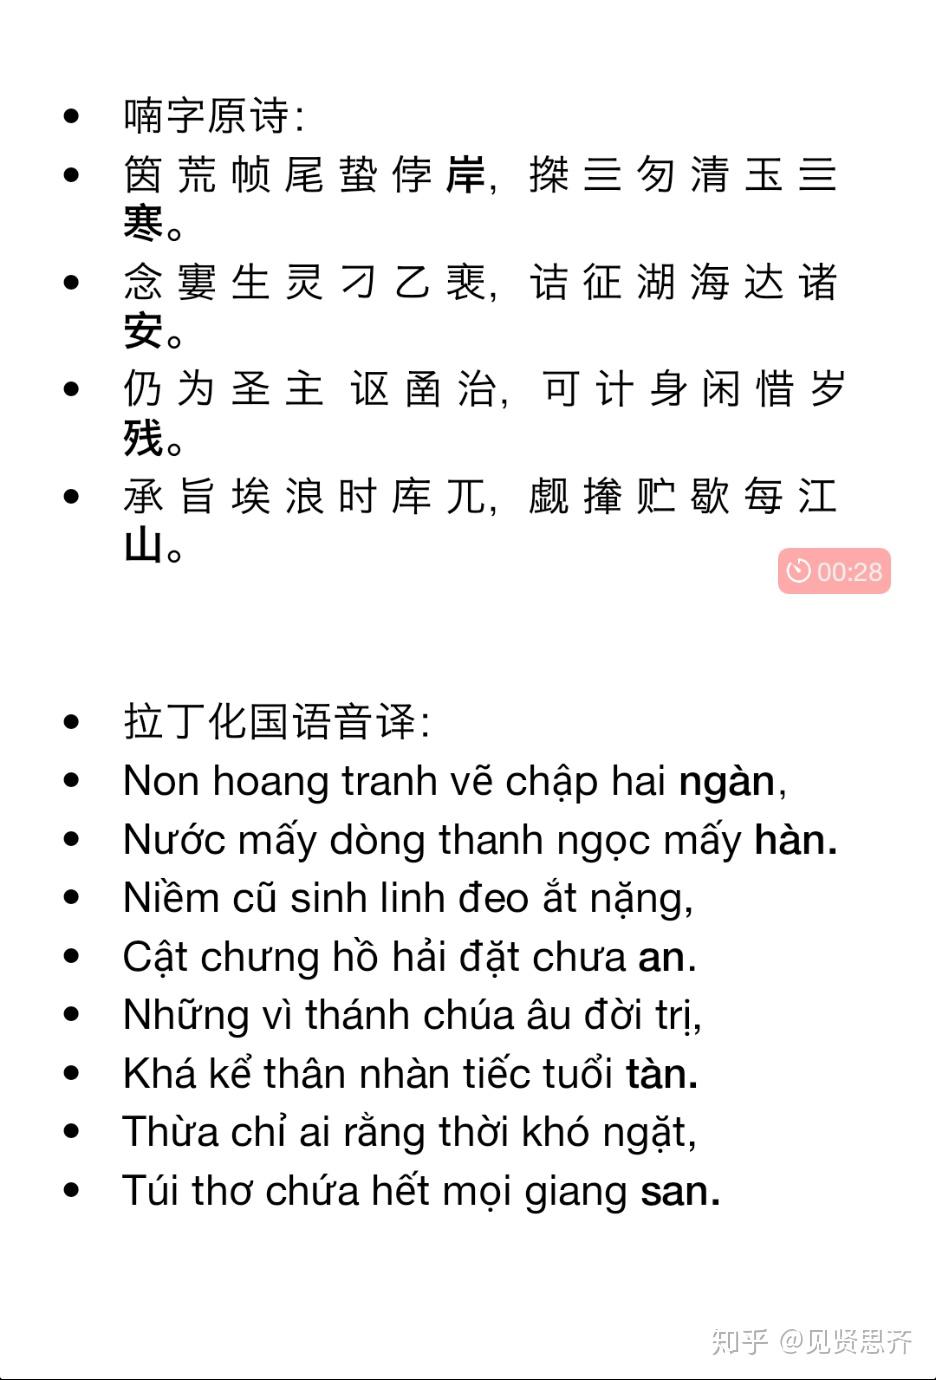 越南语的汉越词和越南本土拉丁文字以及喃字区别